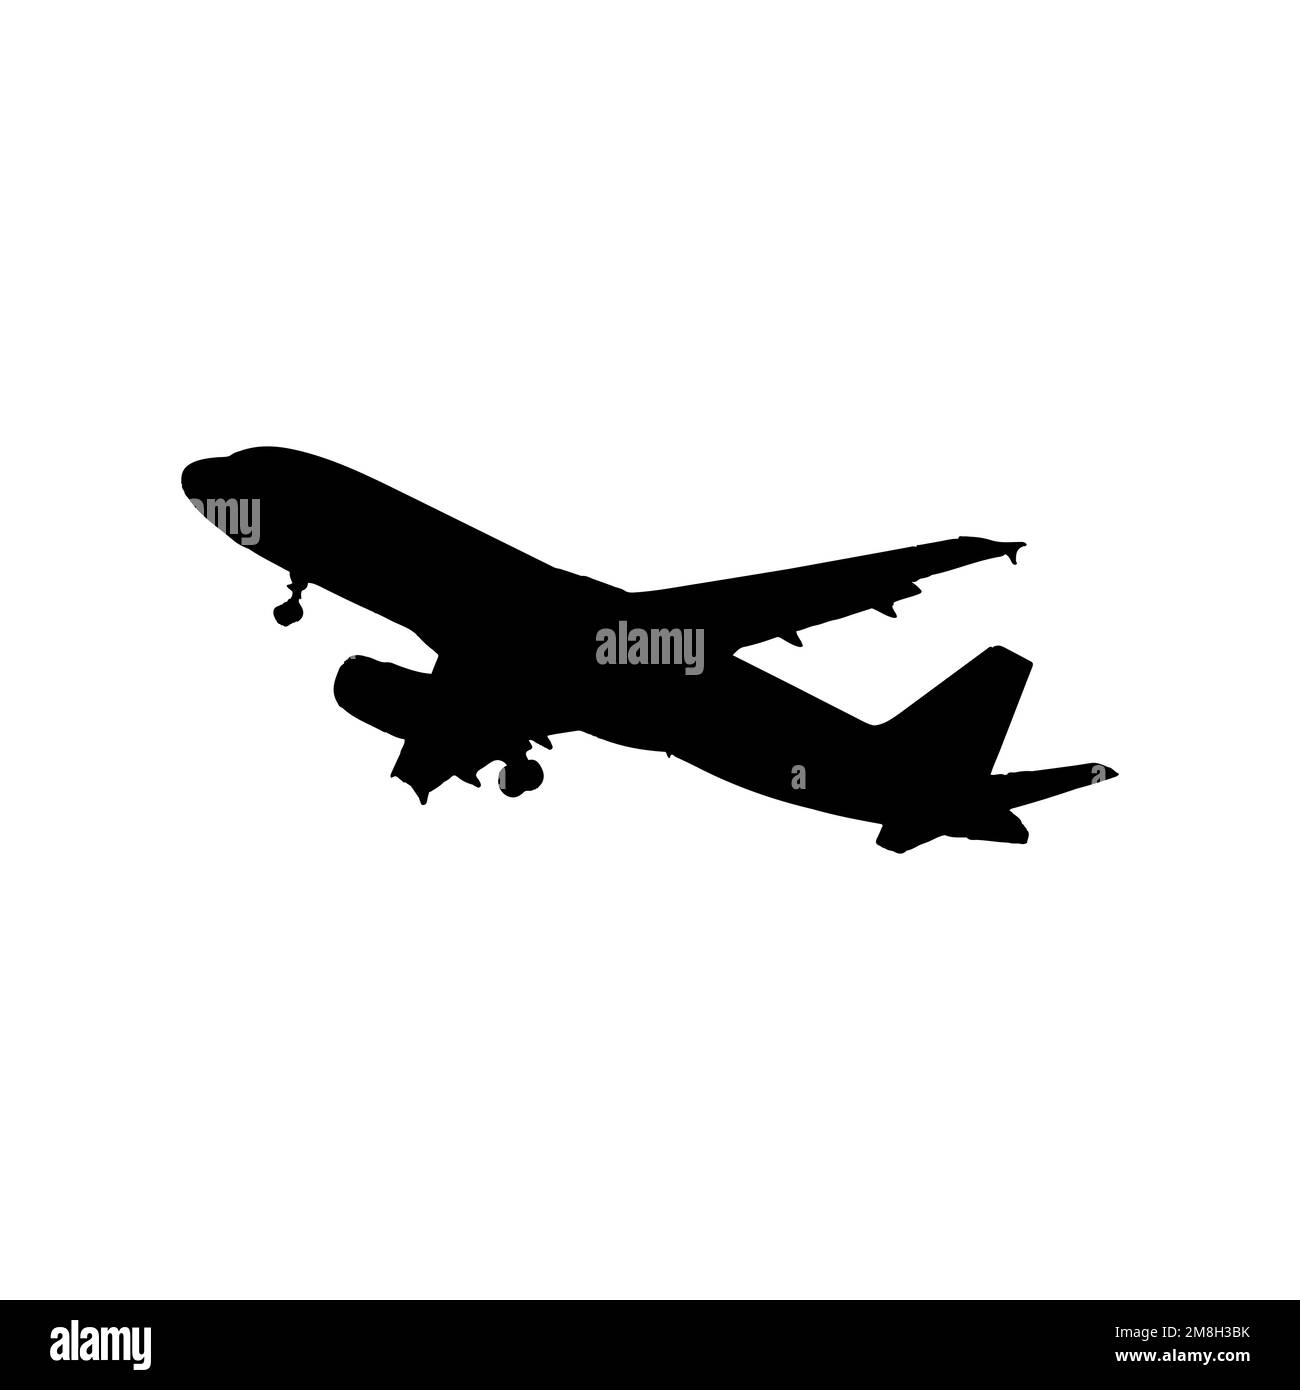 passenger jet logos